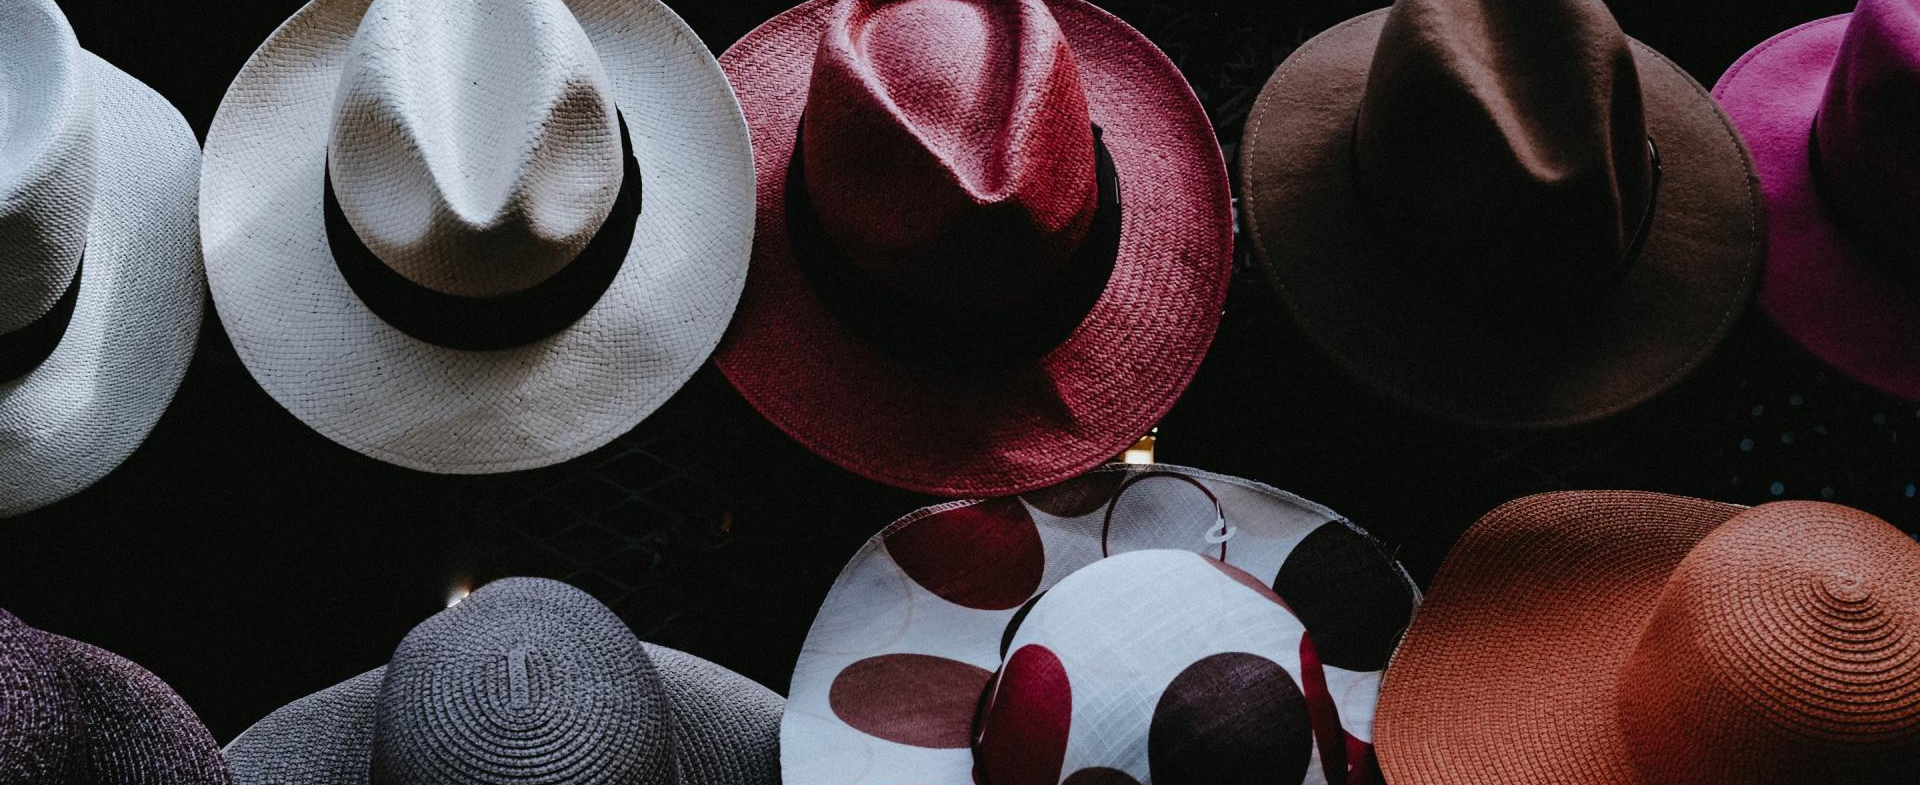 The many hats of entrepreneurship